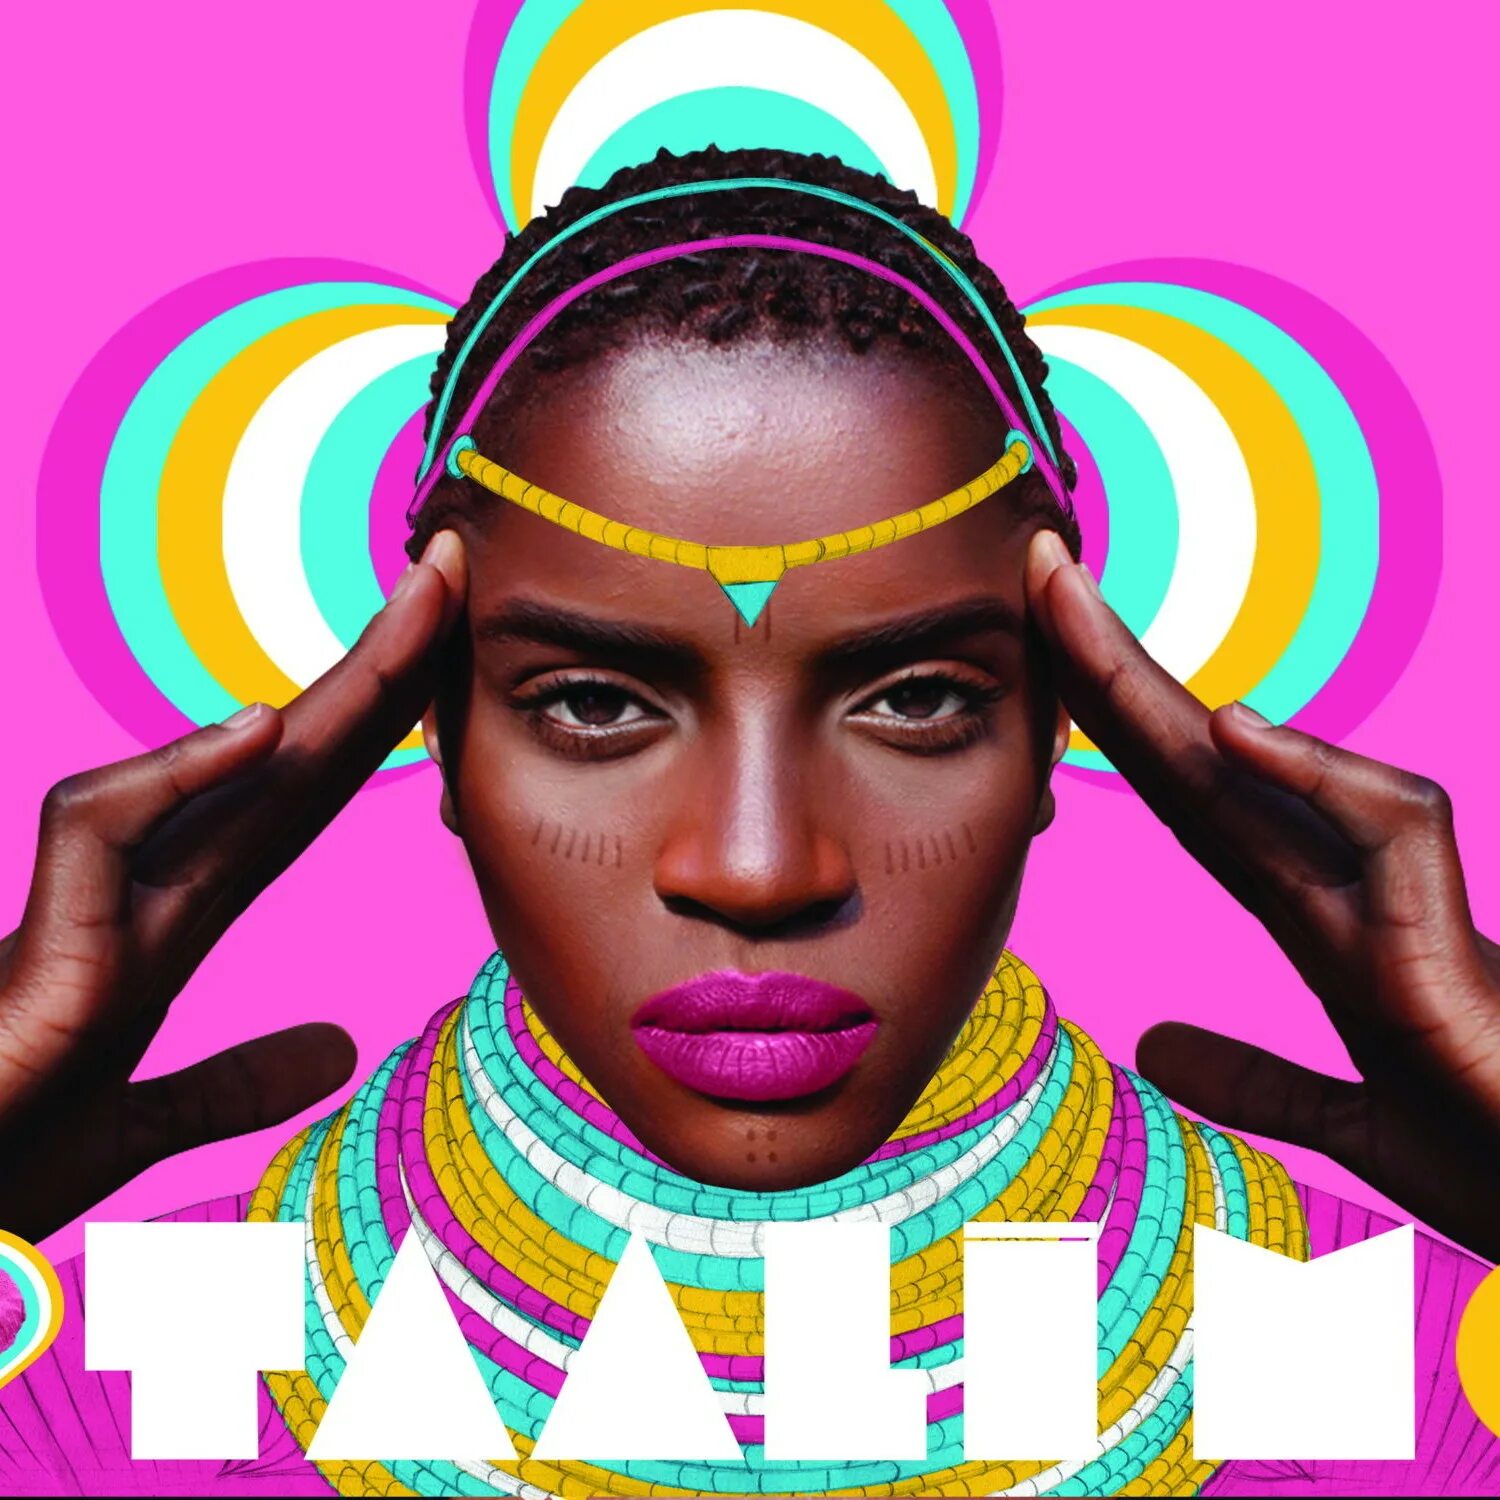 Made in africa. Графический дизайн. Африканский образ для фотосессии. Фотообои Африканский стиль девушки. Звезды в Африке Постер.